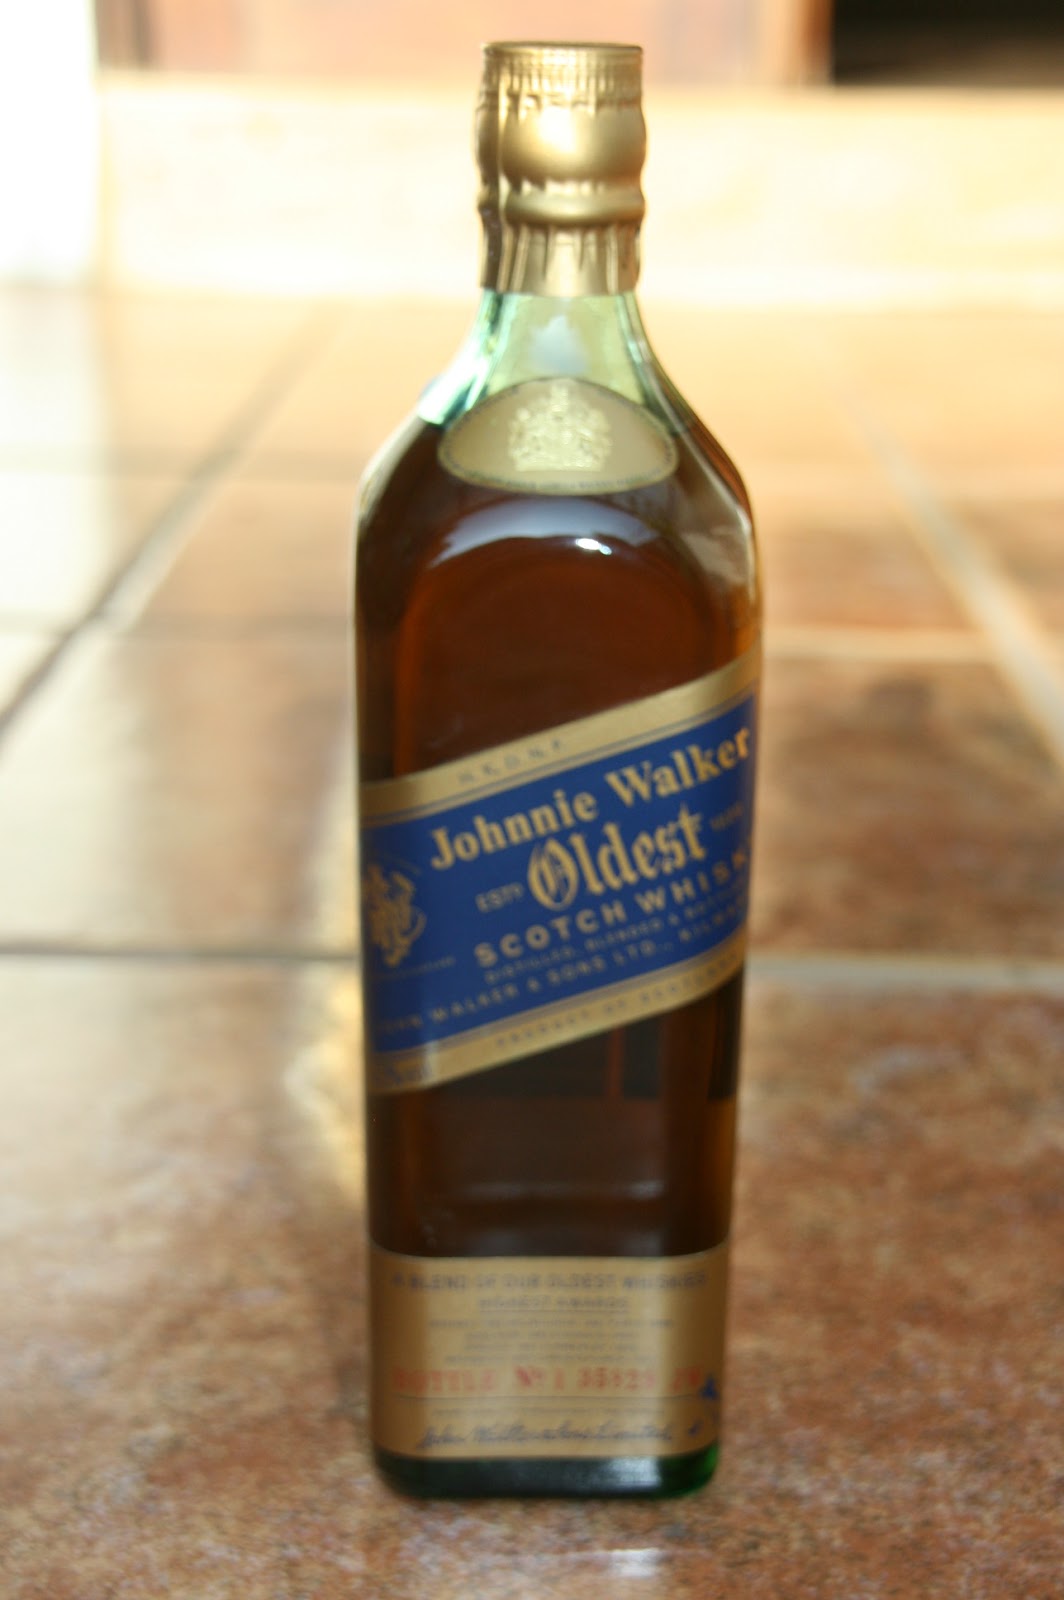 Johnnie Walker Bottles History and Evolution: Oldest